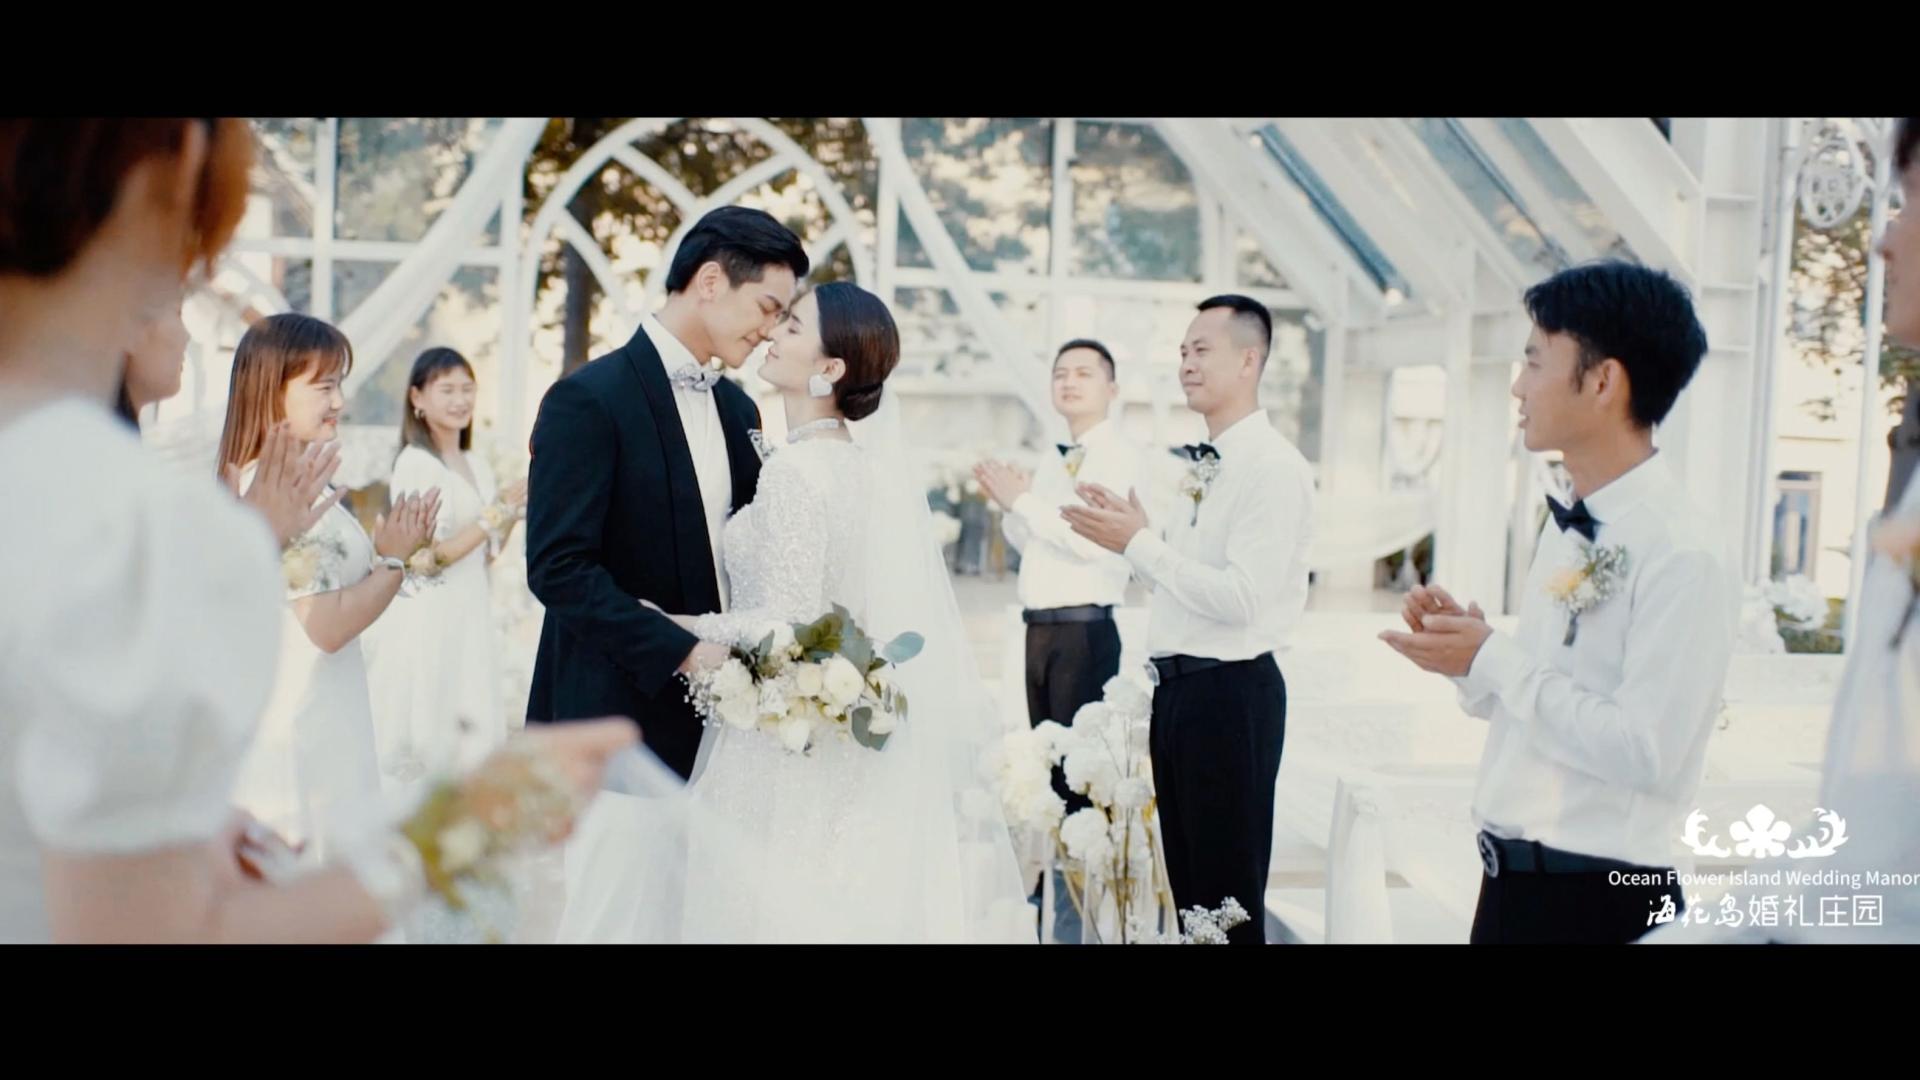 海花岛婚礼系列——水晶教堂婚礼